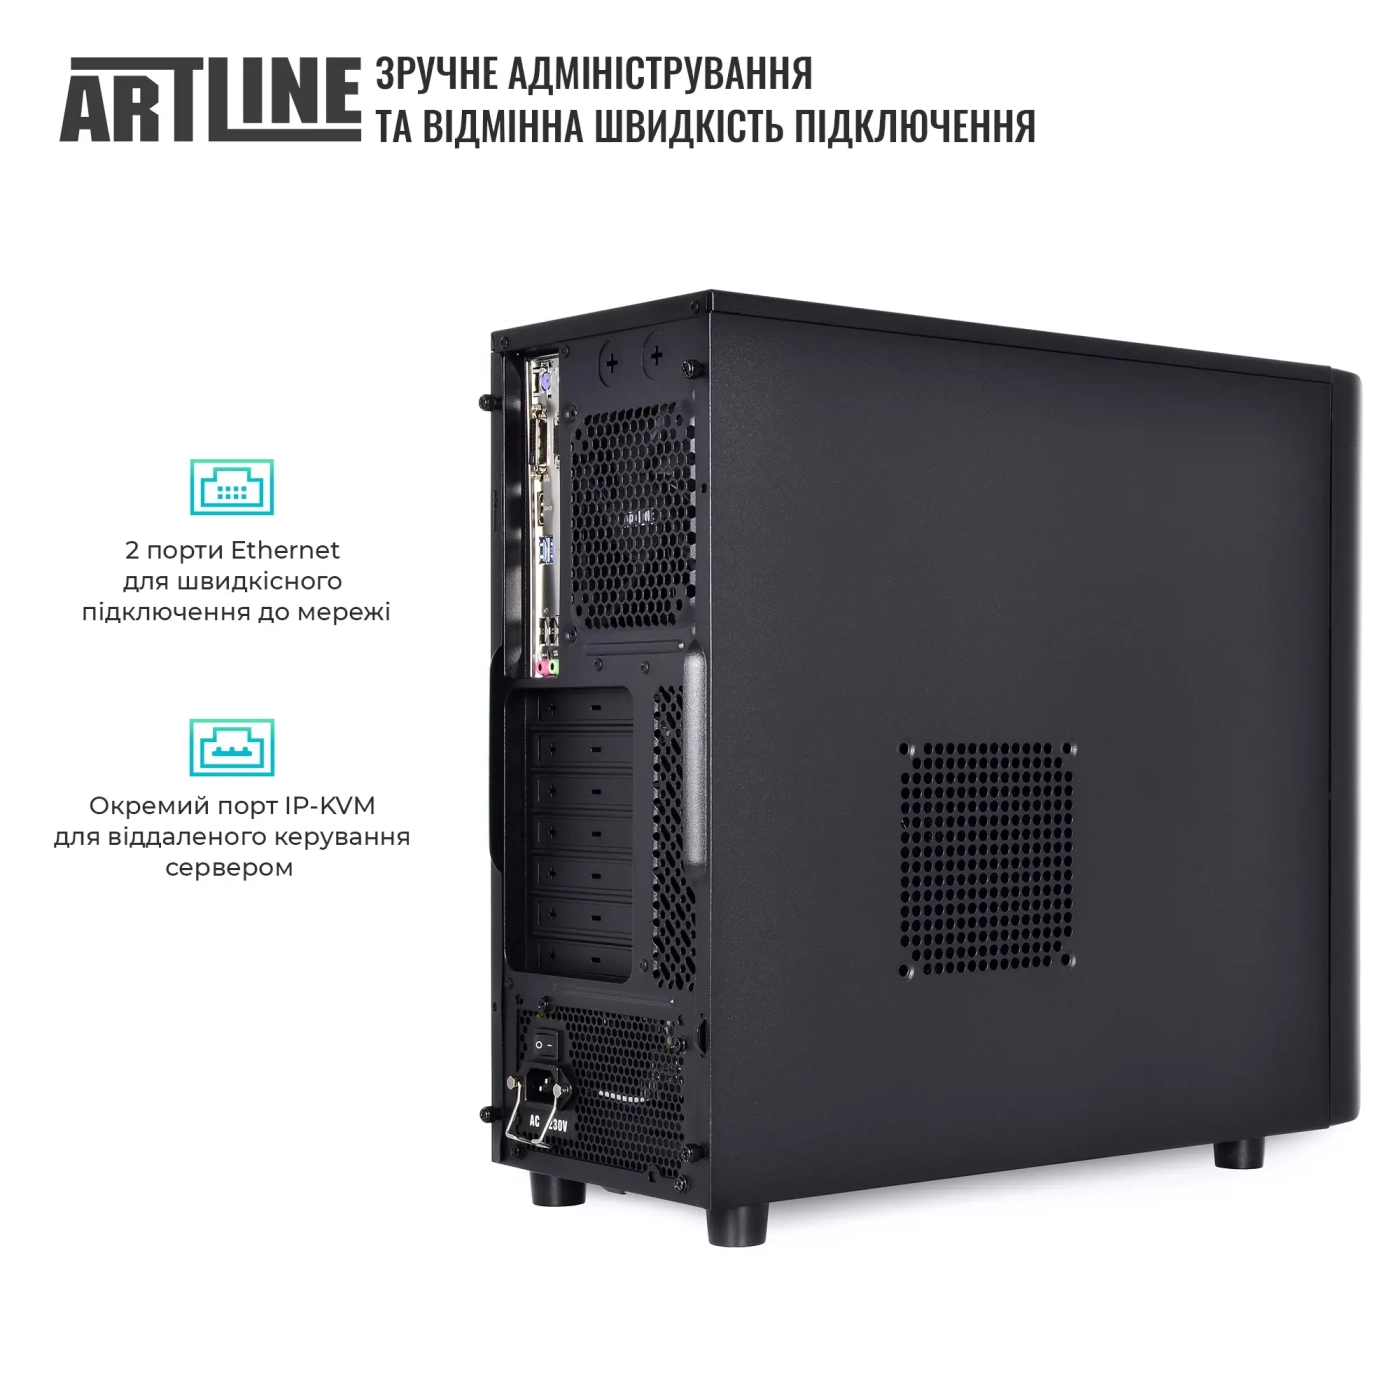 Купить Сервер ARTLINE Business T36 (T36v31) - фото 4